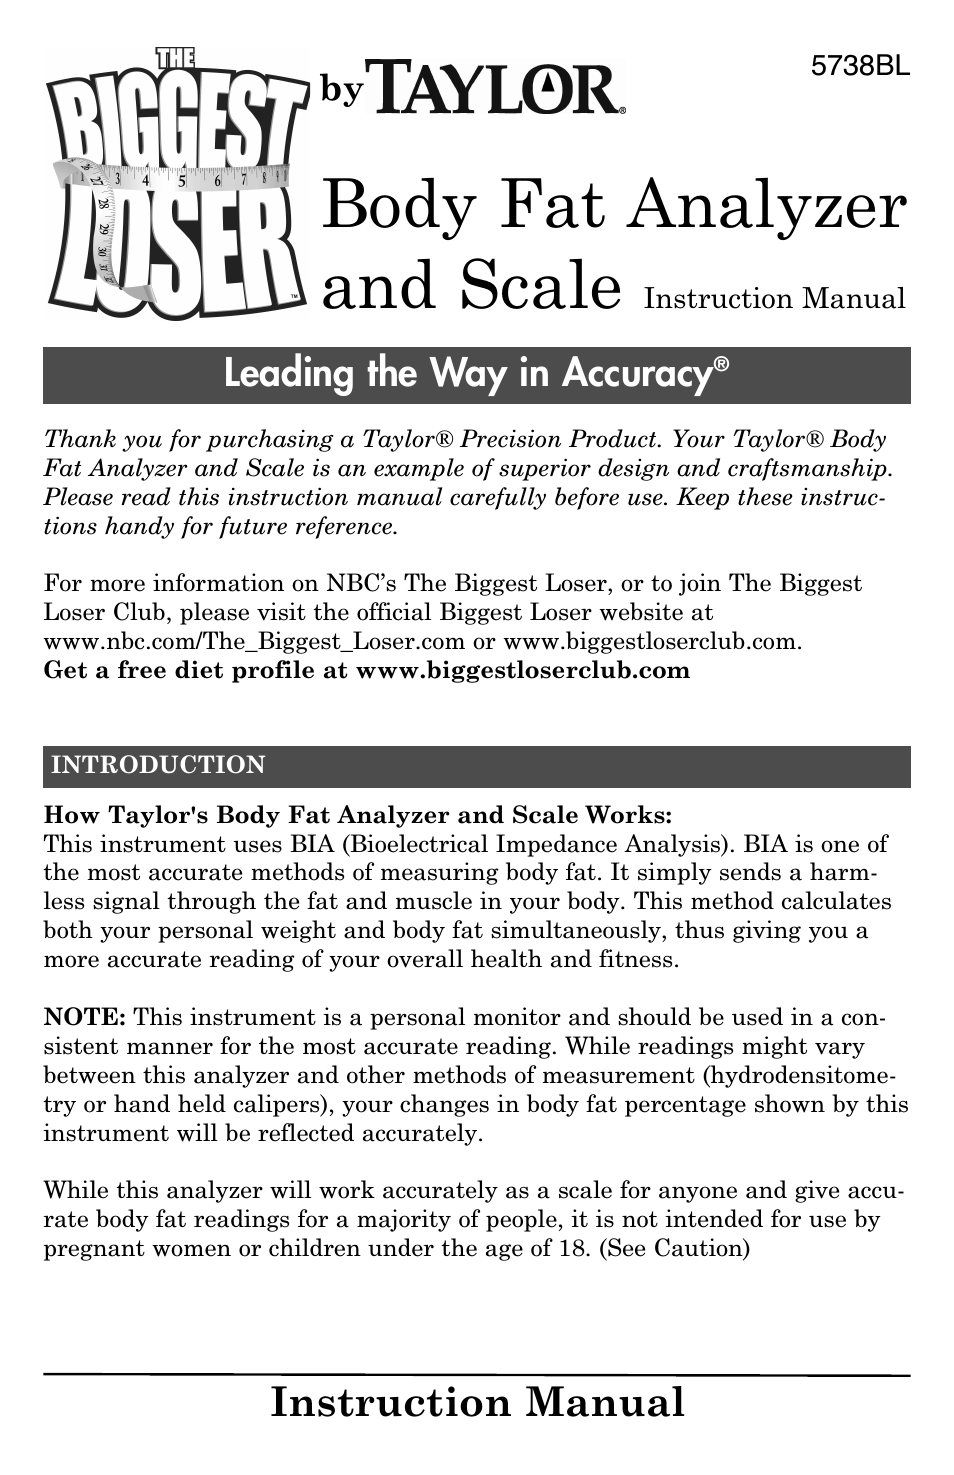 Body Fat Analyzer and Scale 5738BL